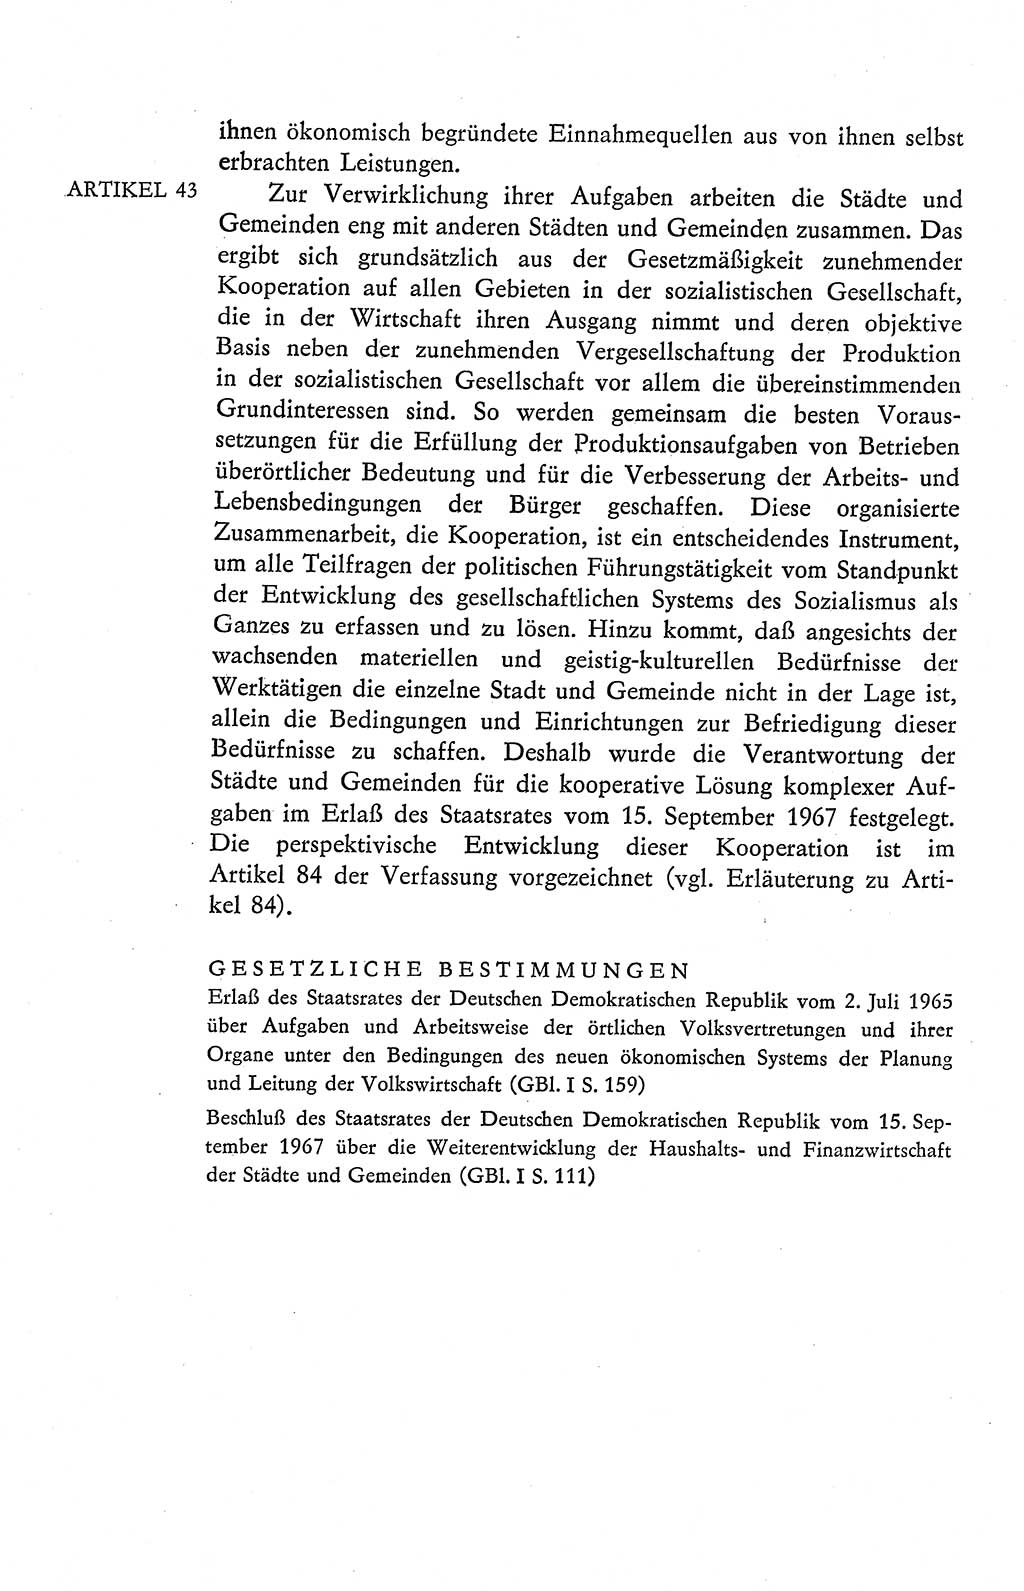 Verfassung der Deutschen Demokratischen Republik (DDR), Dokumente, Kommentar 1969, Band 2, Seite 206 (Verf. DDR Dok. Komm. 1969, Bd. 2, S. 206)